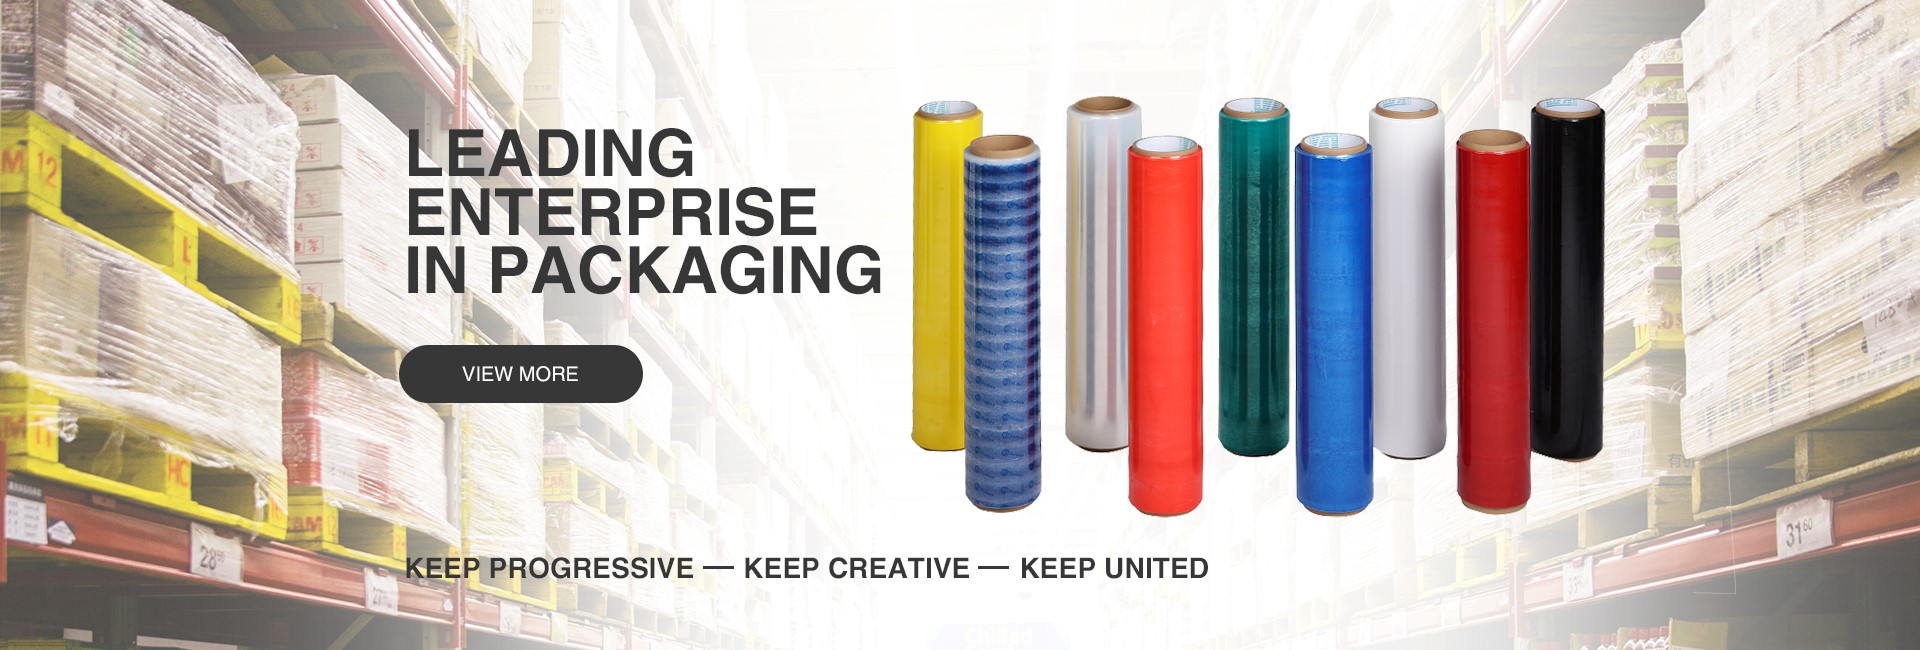 东莞市致腾塑胶制品有限公司将亮相CIPPME上海包装展